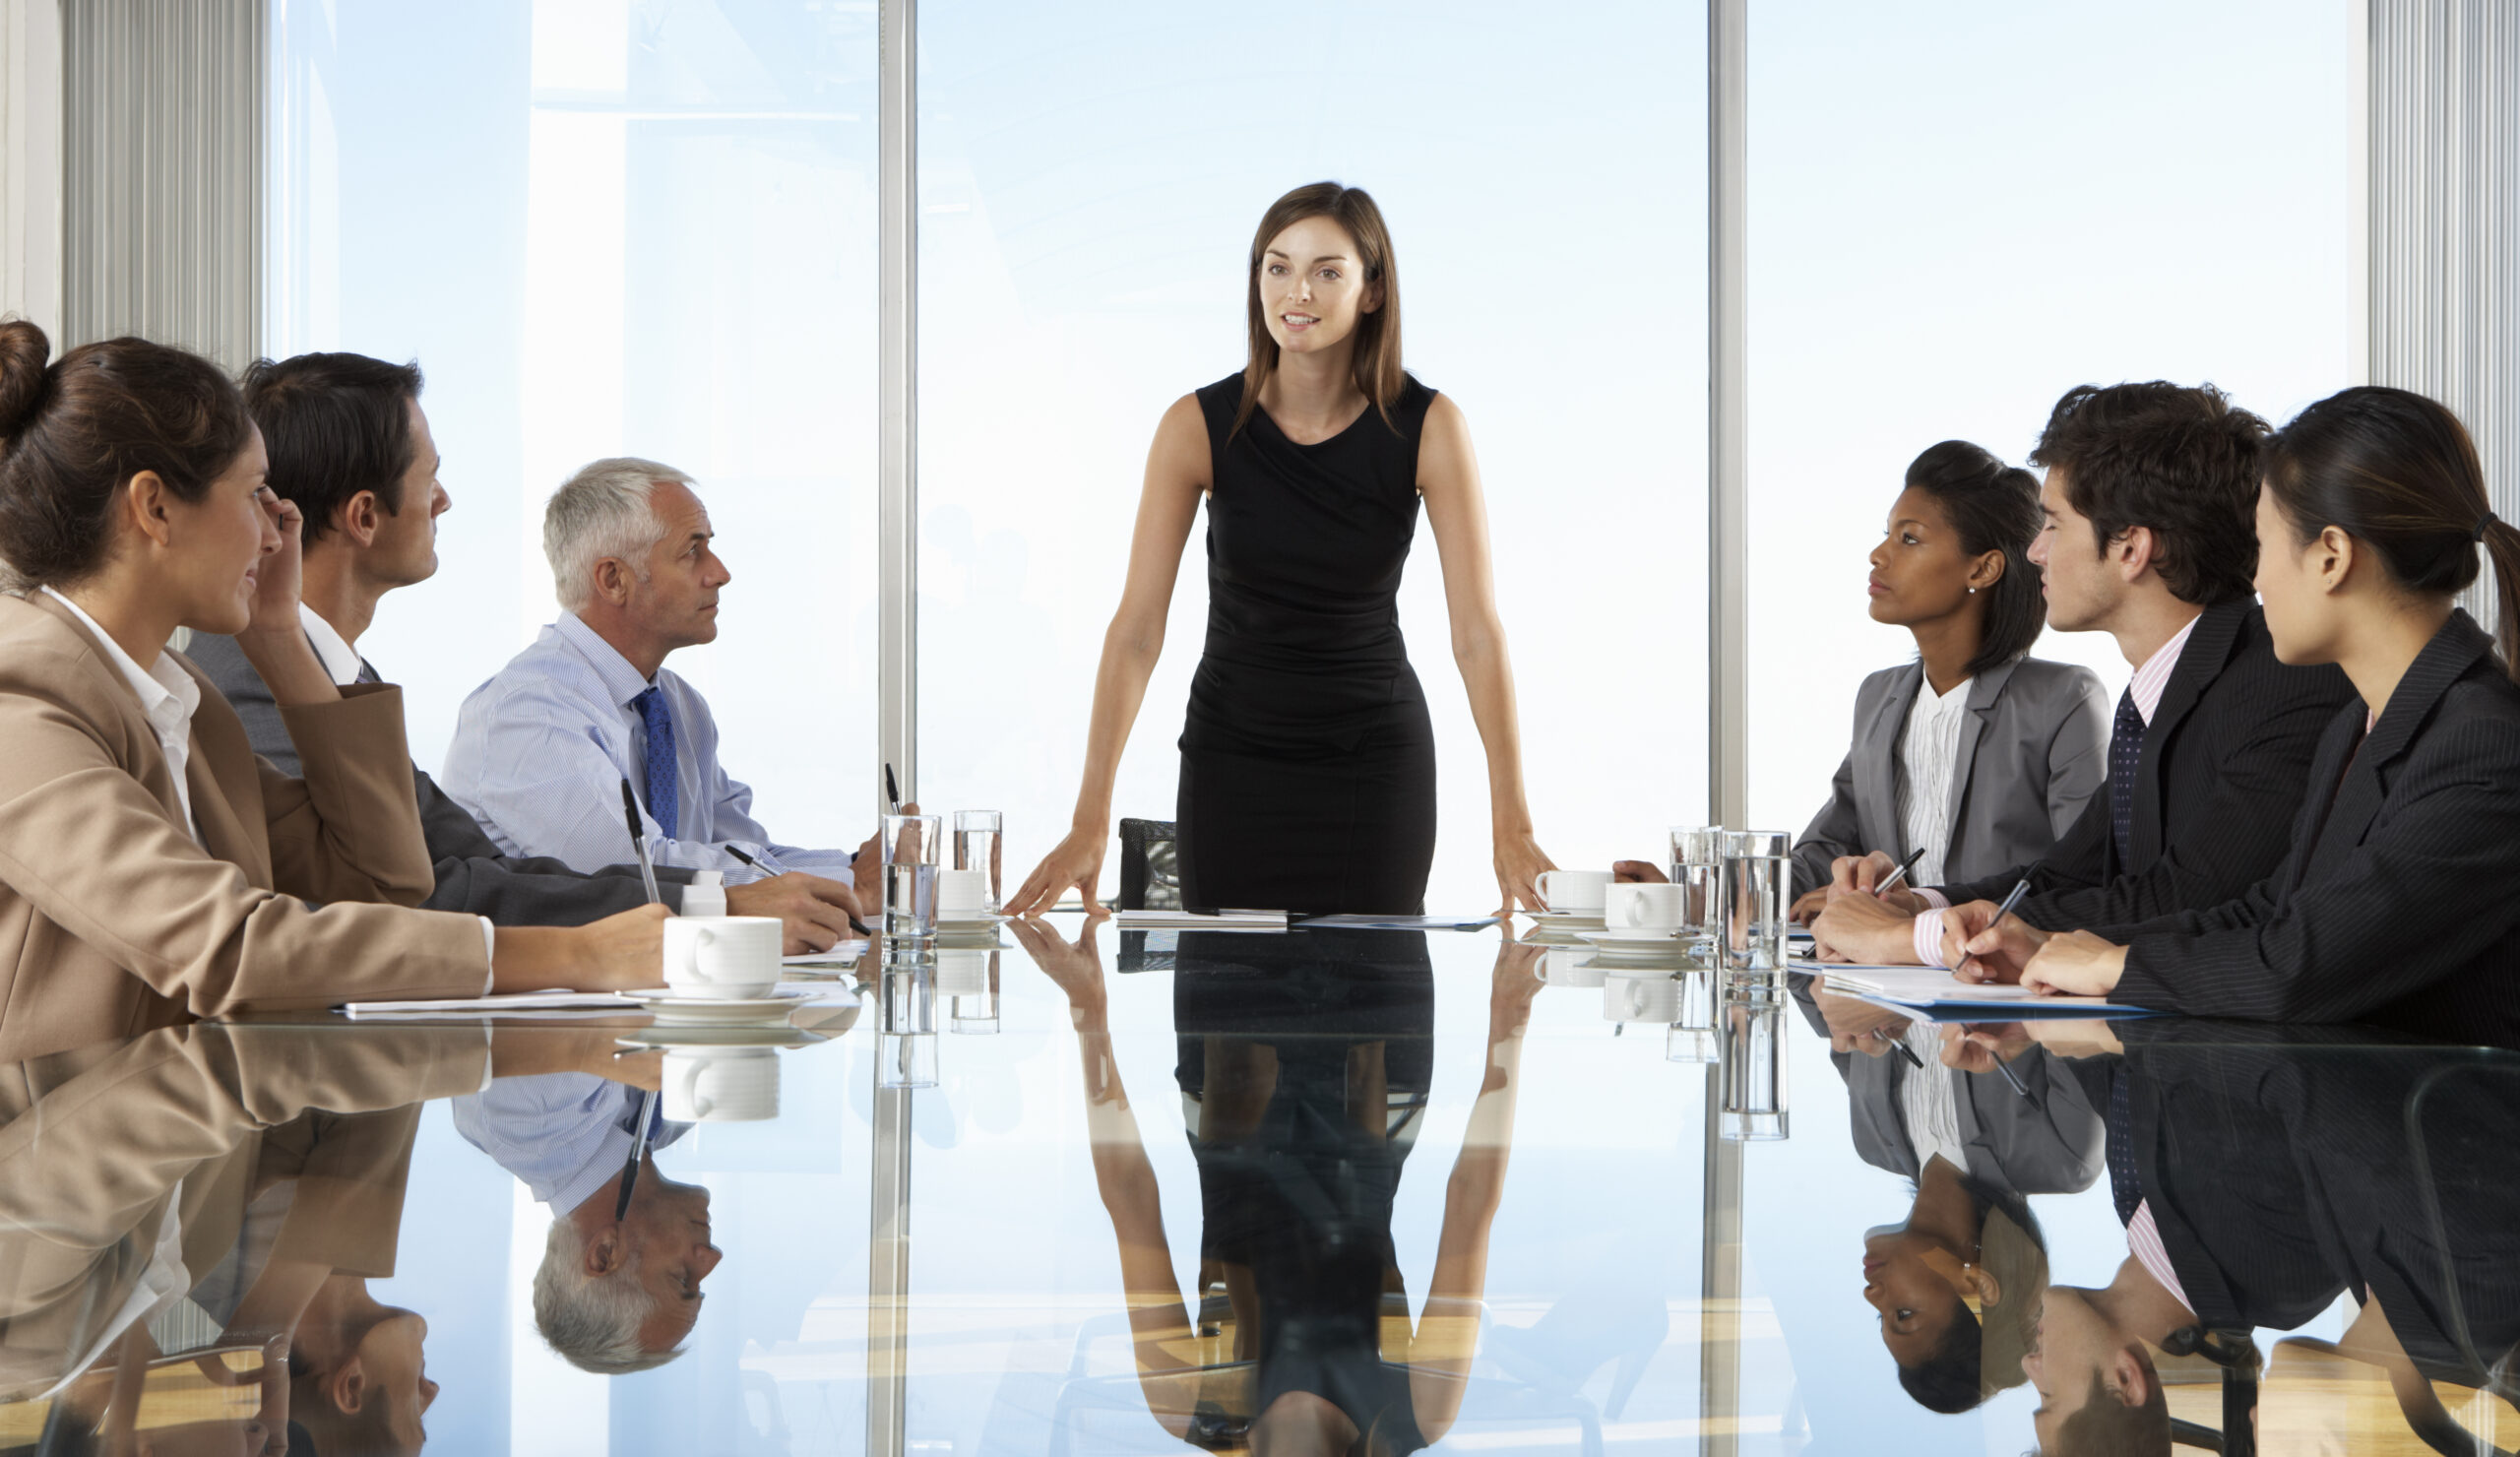 Das Foto zeigt eine Frau stehend als Führungskraft an einem Meeting mit Mitarbeitenden.